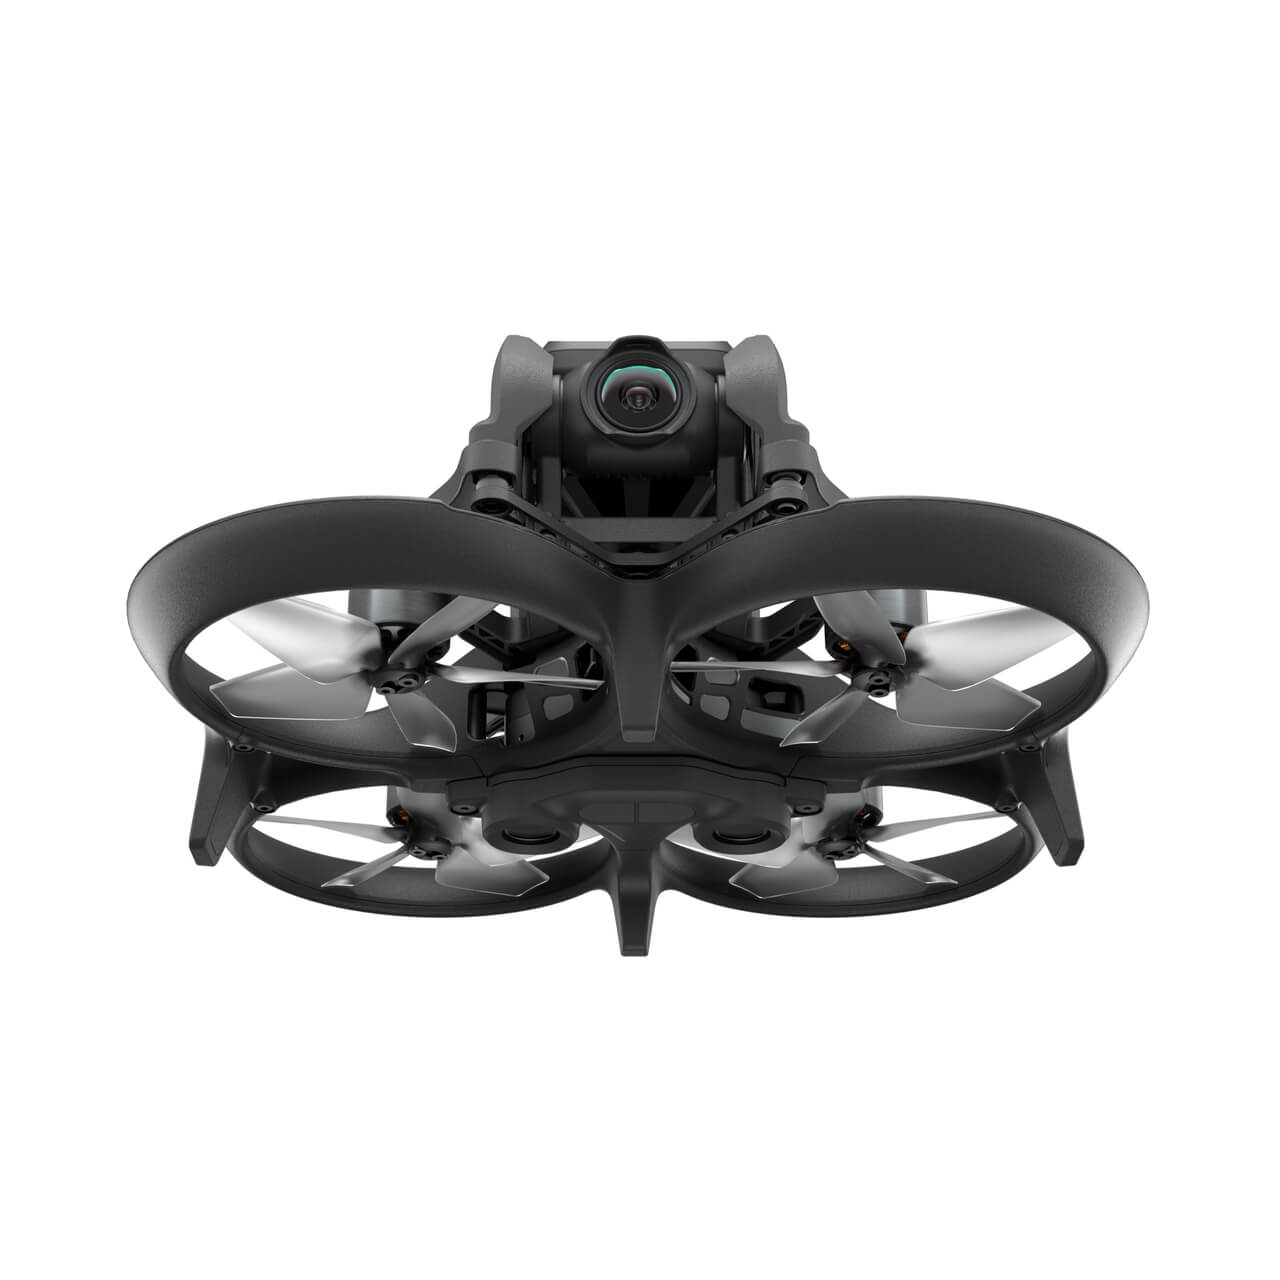 DJI Avata - FPV Drone - Losse drone